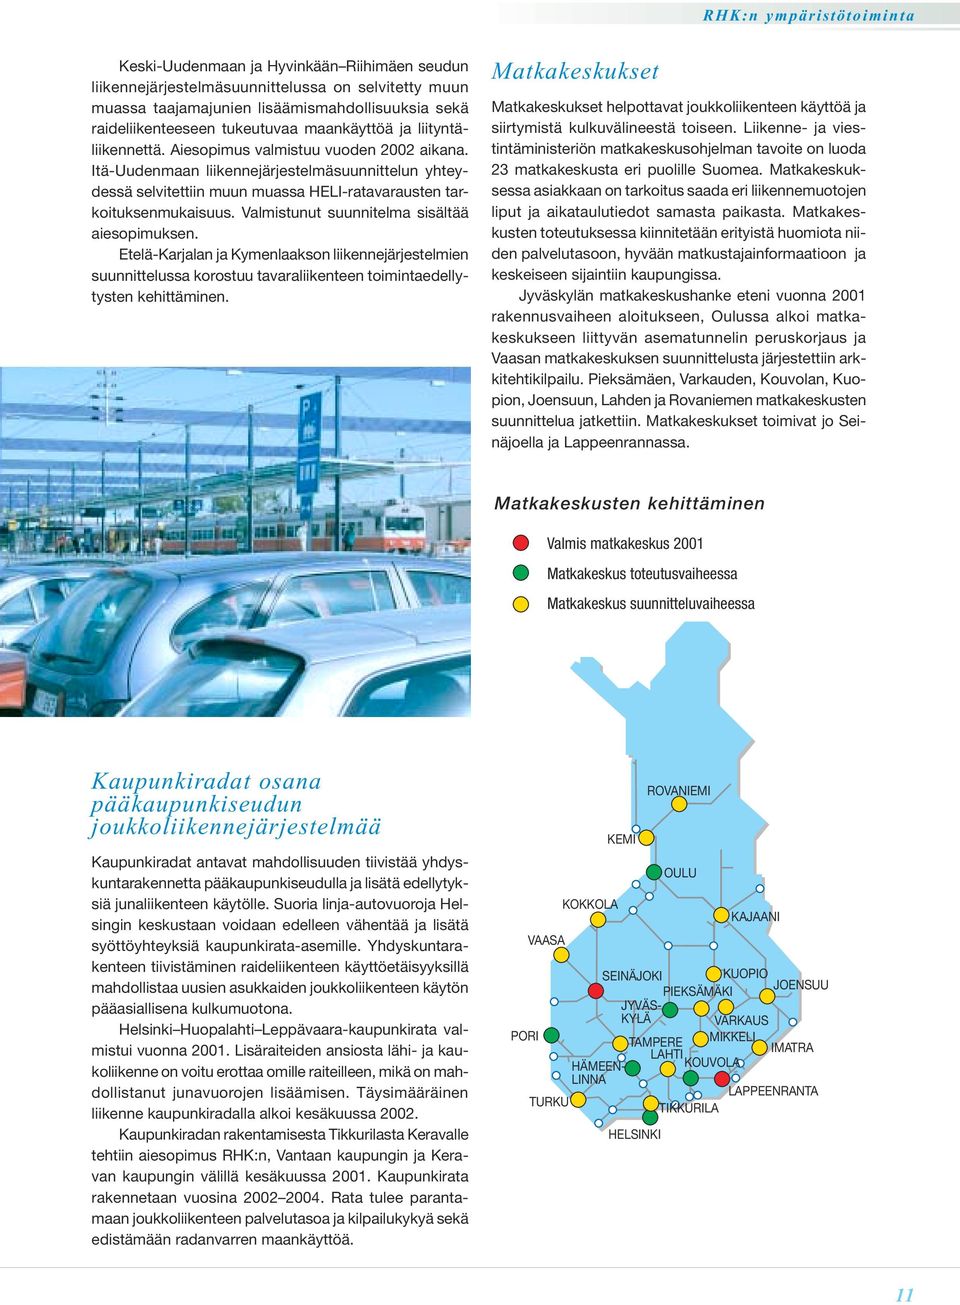 Valmistunut suunnitelma sisältää aiesopimuksen. Etelä-Karjalan ja Kymenlaakson liikennejärjestelmien suunnittelussa korostuu tavaraliikenteen toimintaedellytysten kehittäminen.